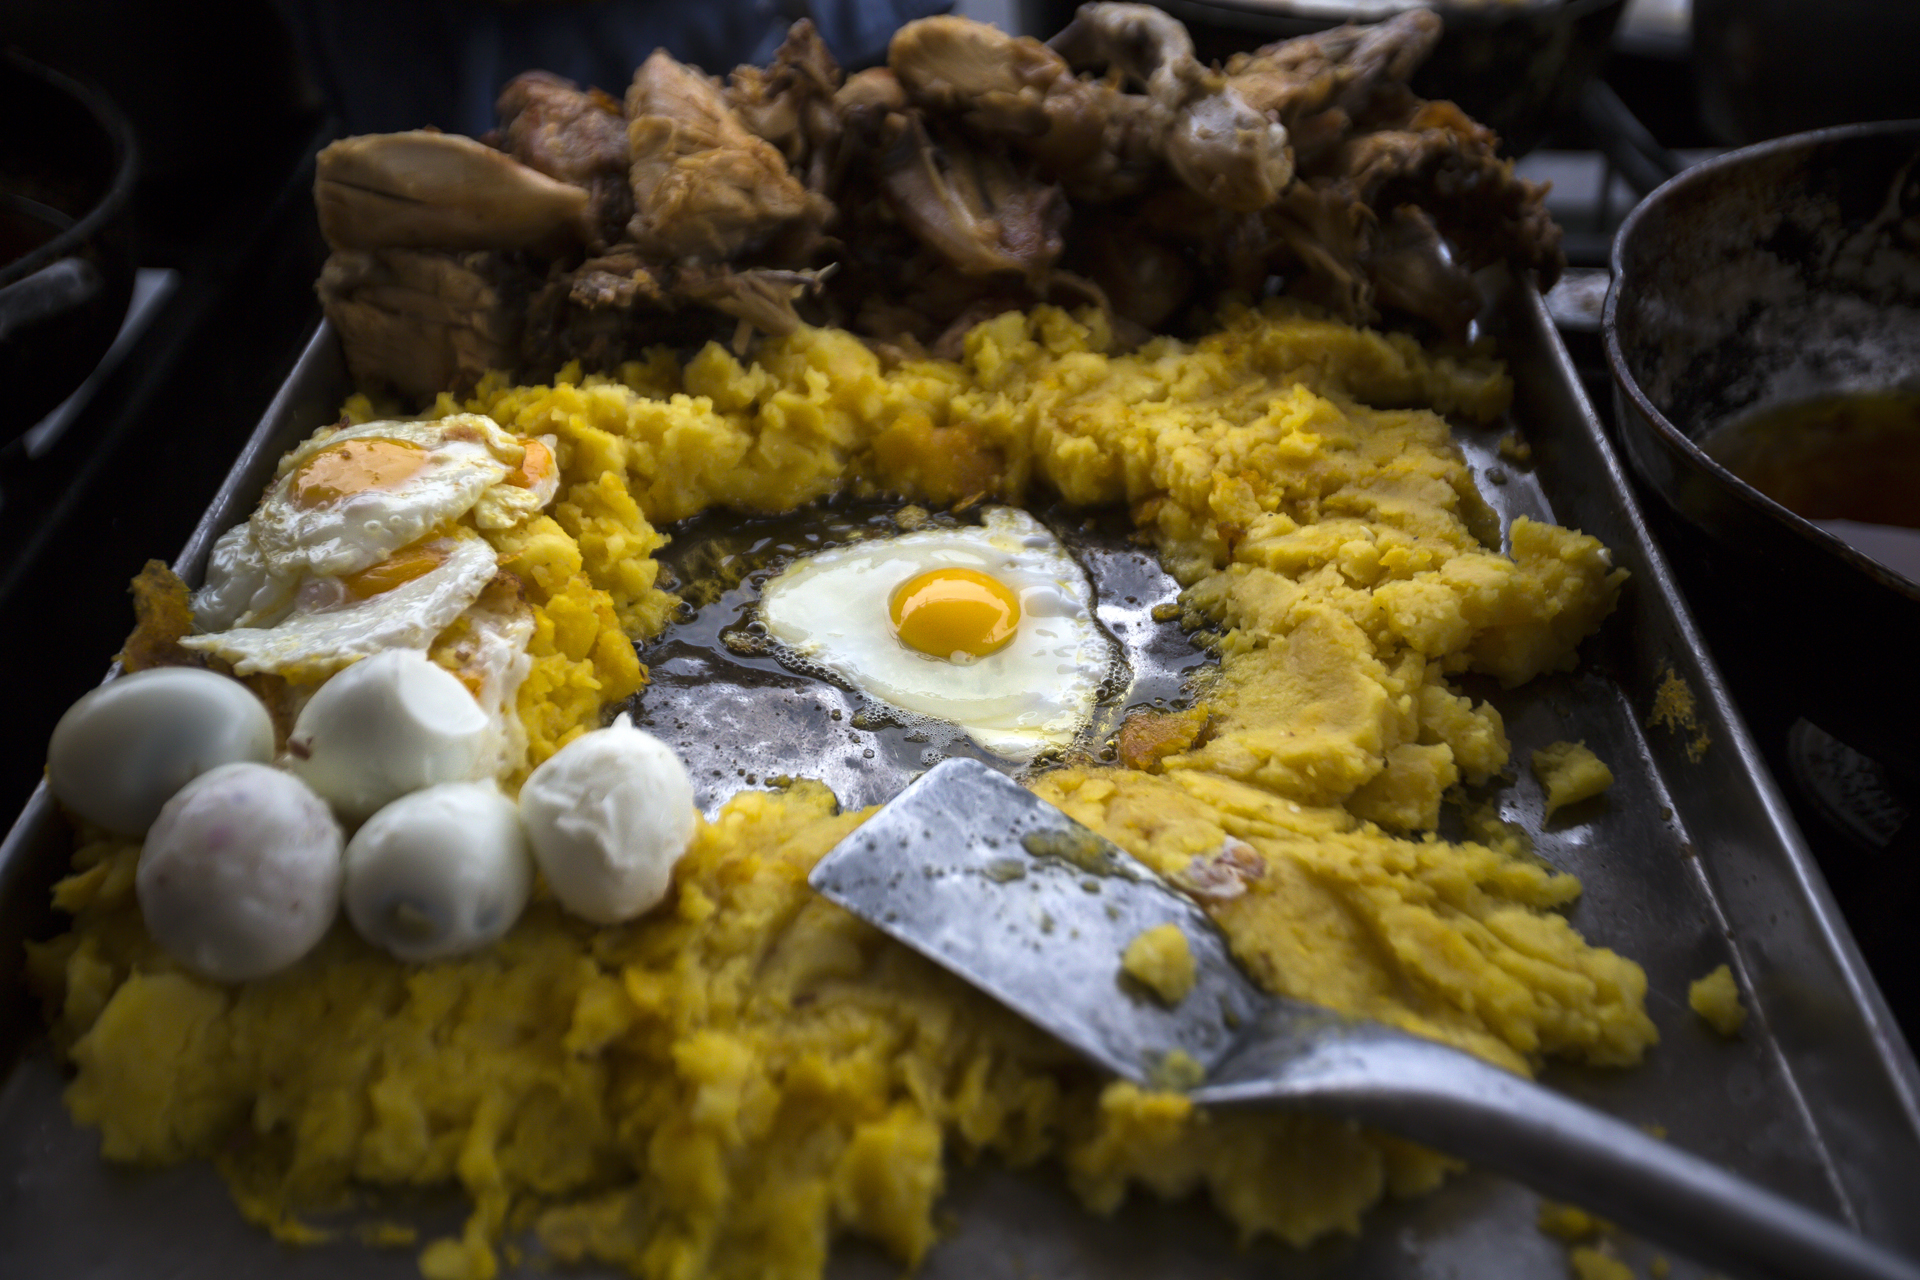 La tortillas o llapingachos con fritada y huevos es uno de los platos de comida callejera de los quiteños.